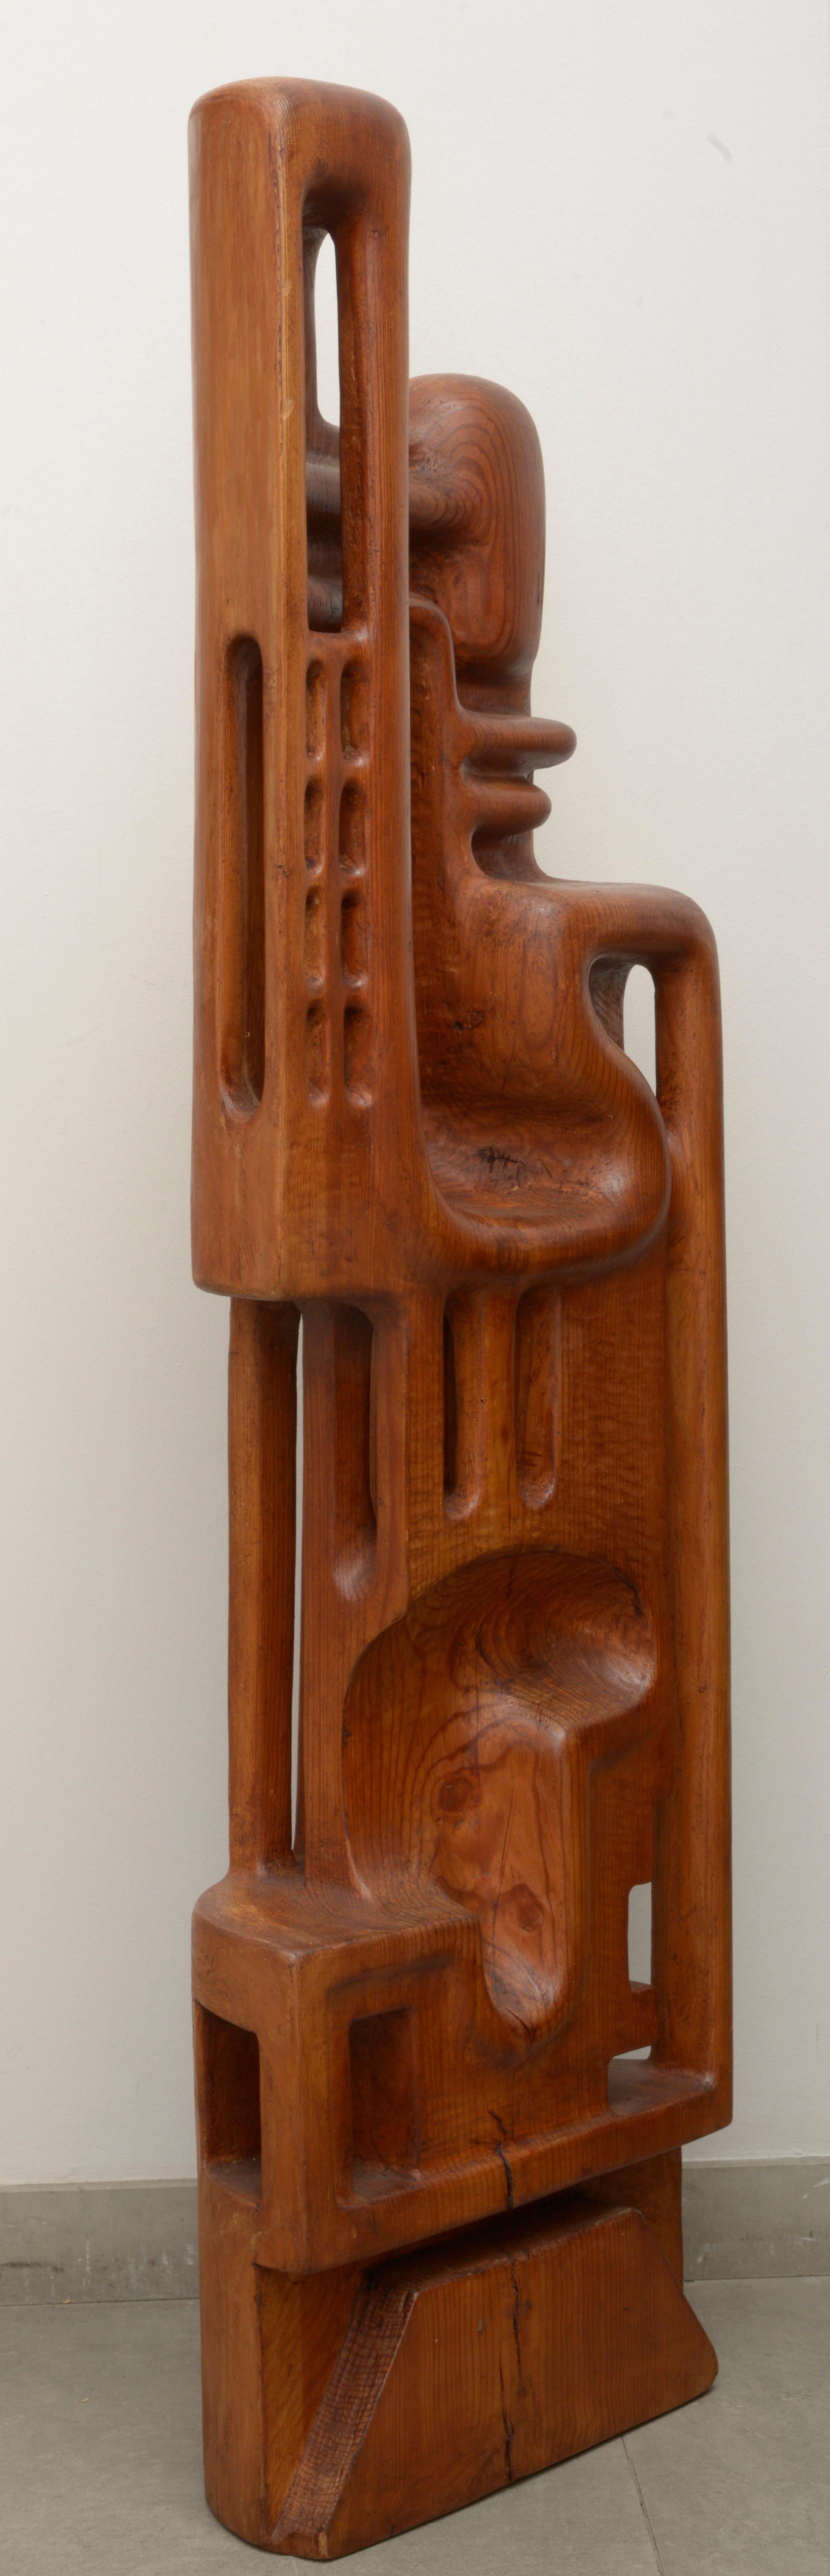 Carved Henryk Burzec 1970s Wood Sculpture For Sale